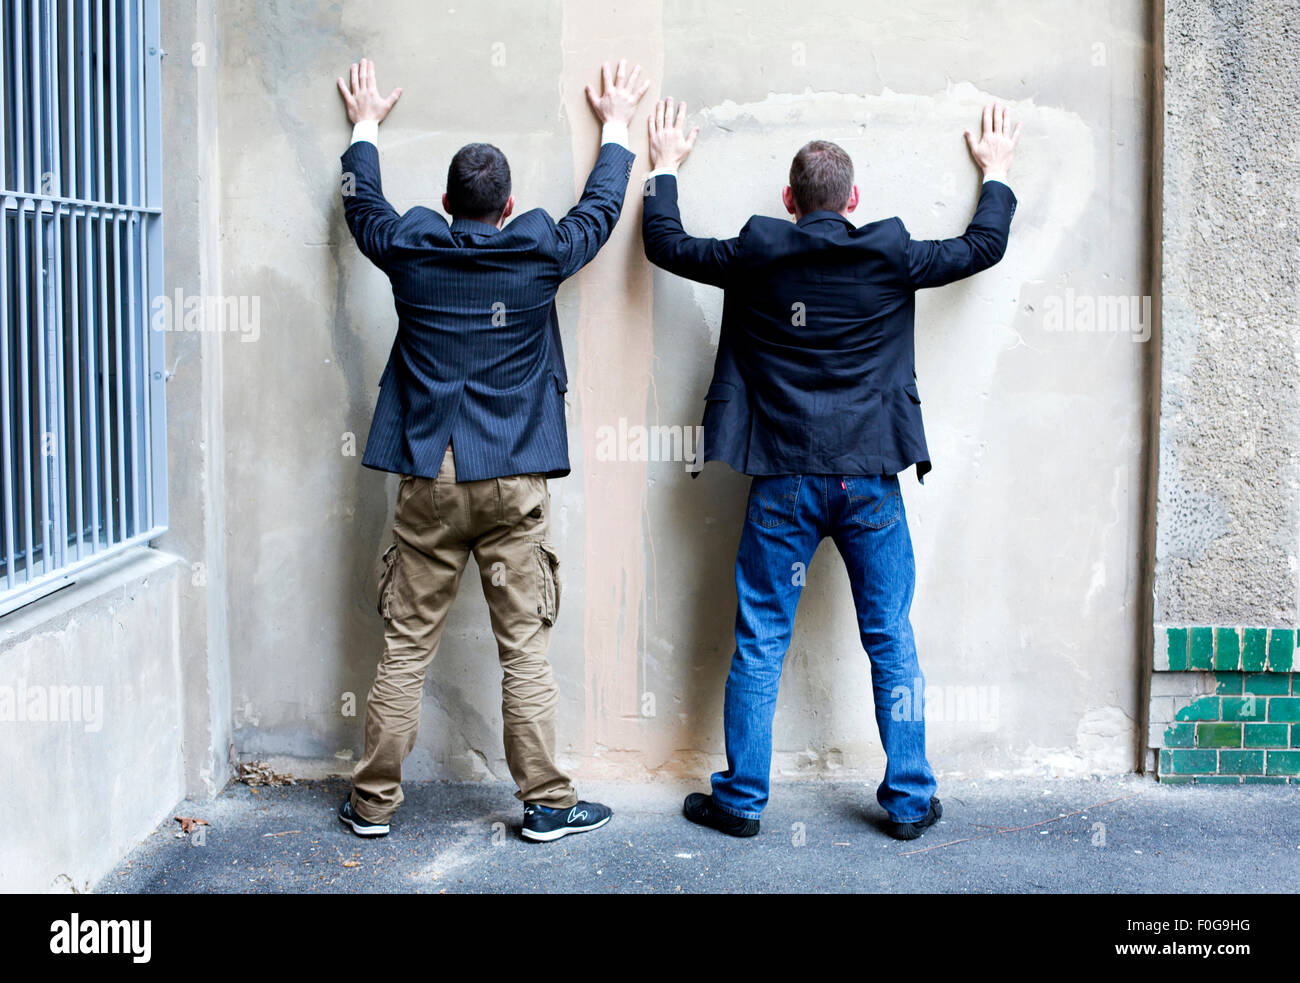 Deux hommes en vestons debout contre un mur Banque D'Images